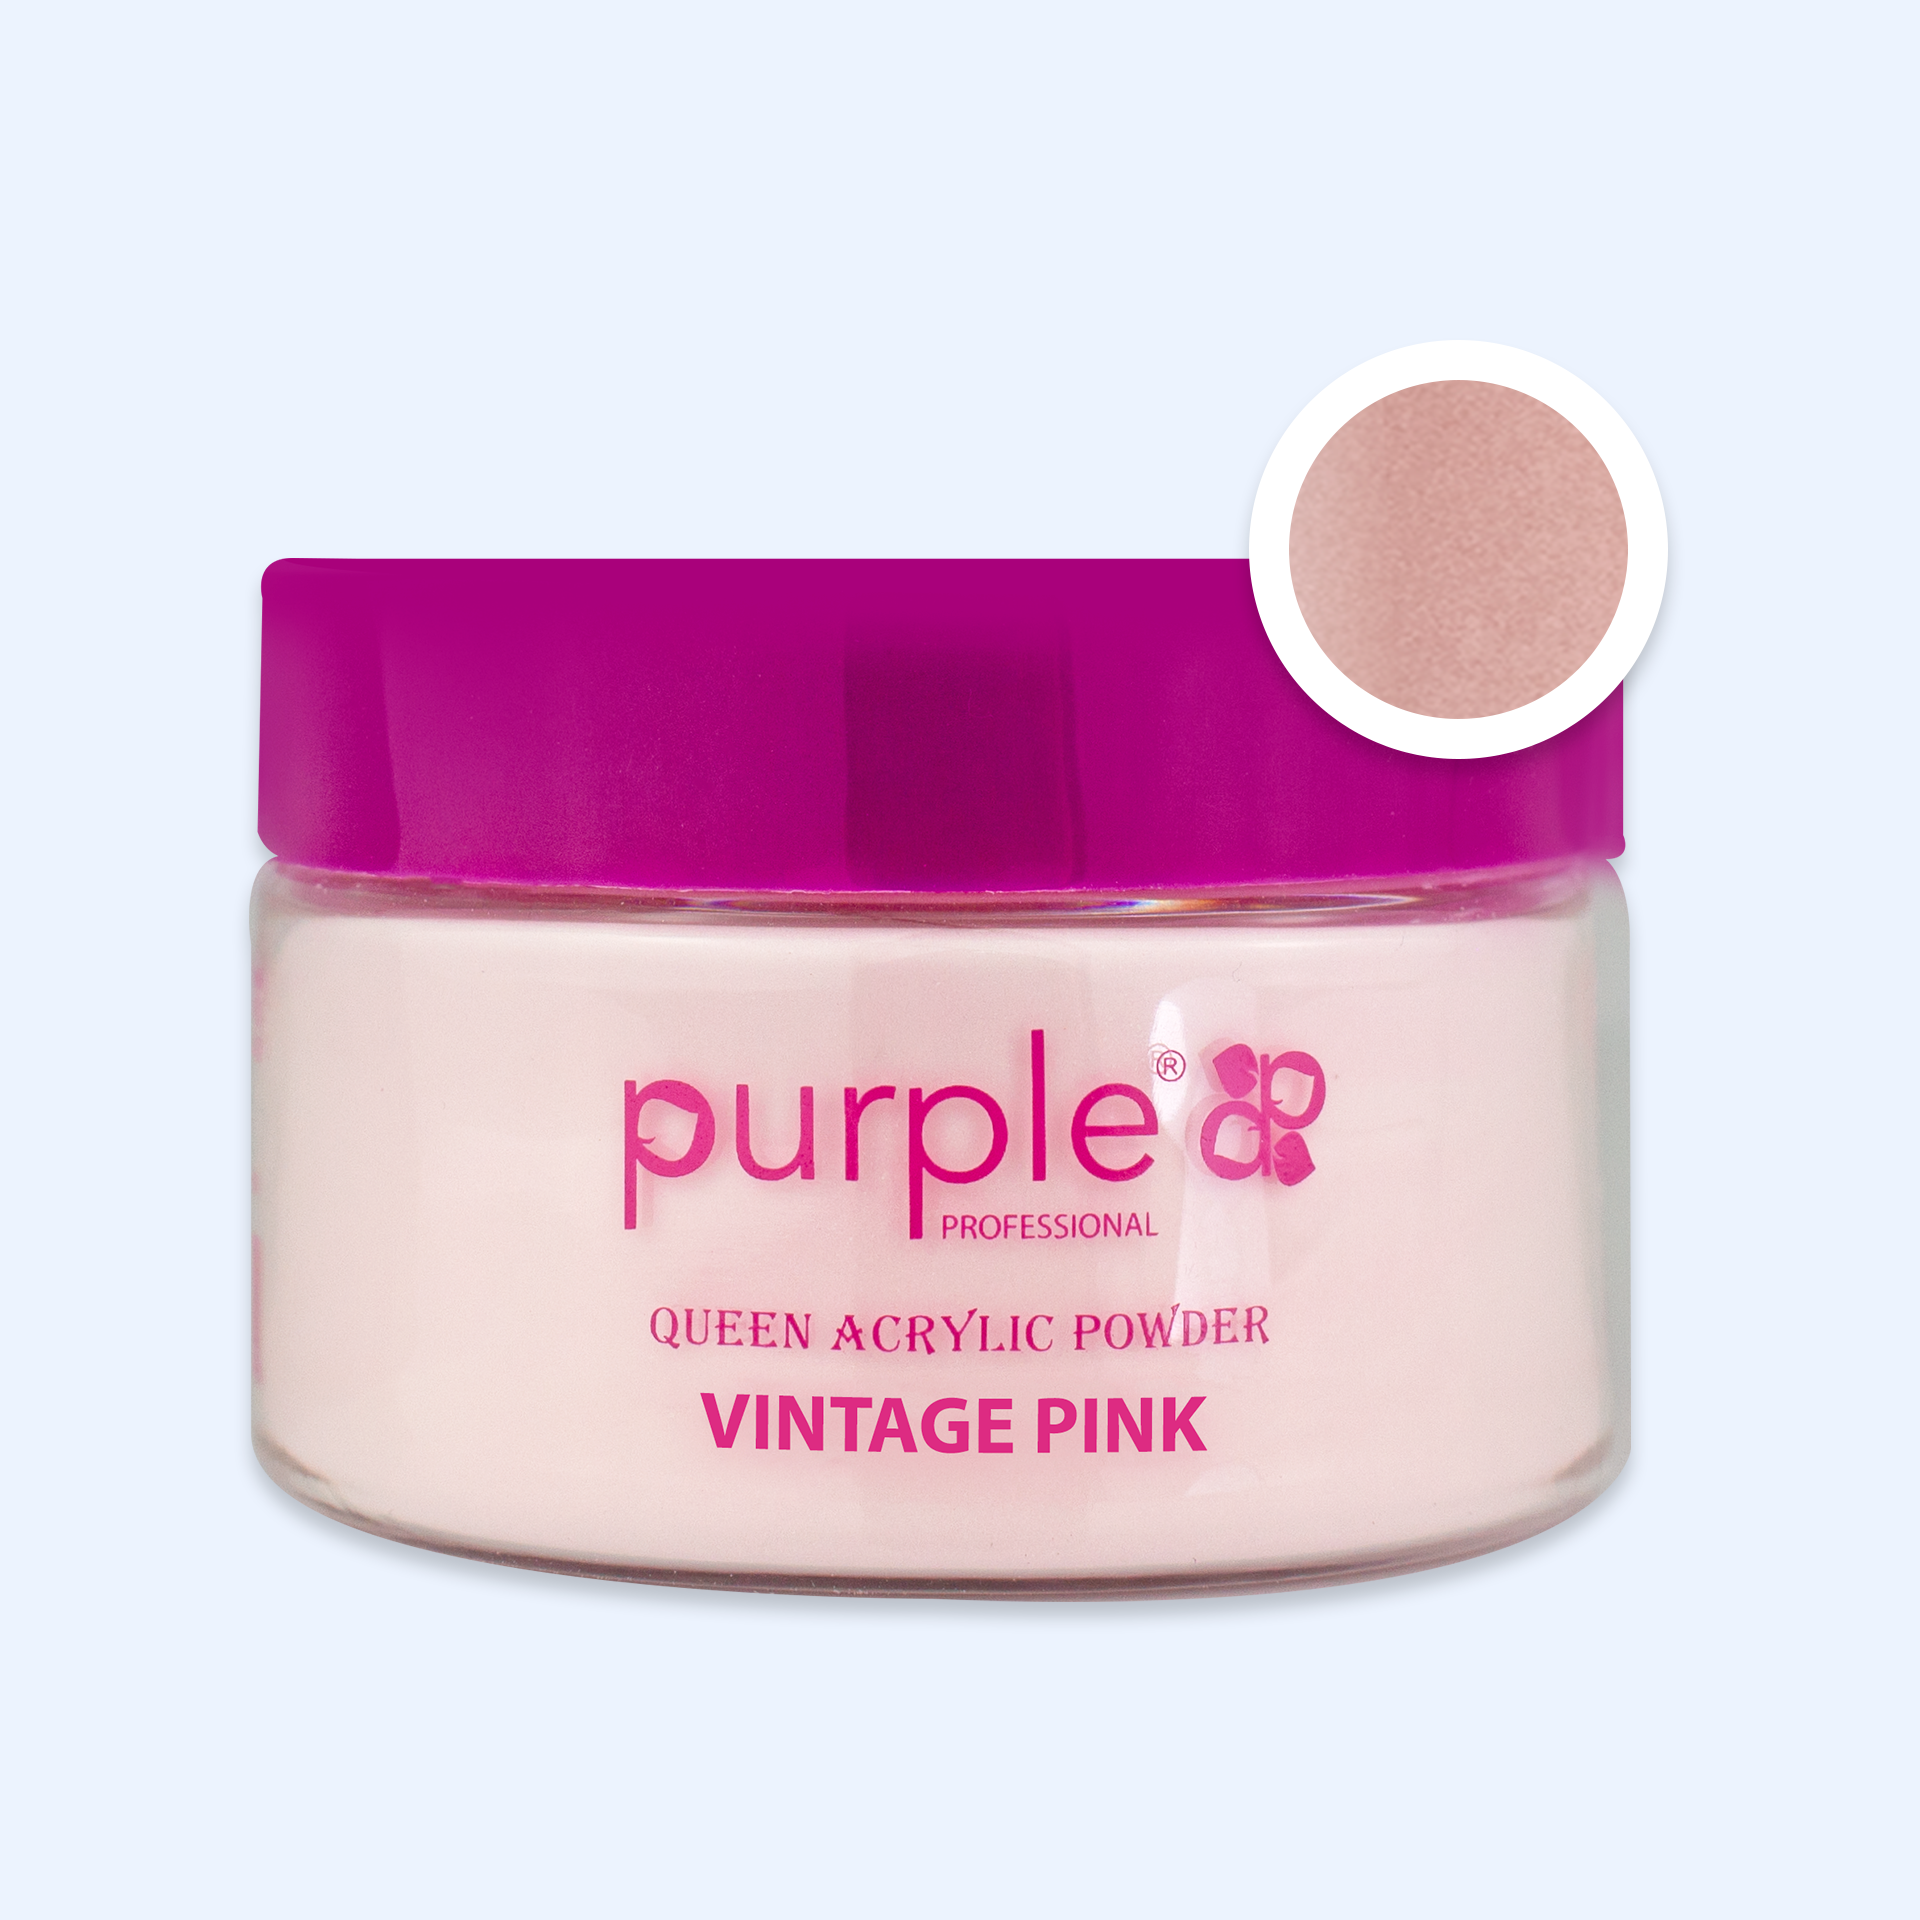 Queen Acrylic Powder Vintage Pink